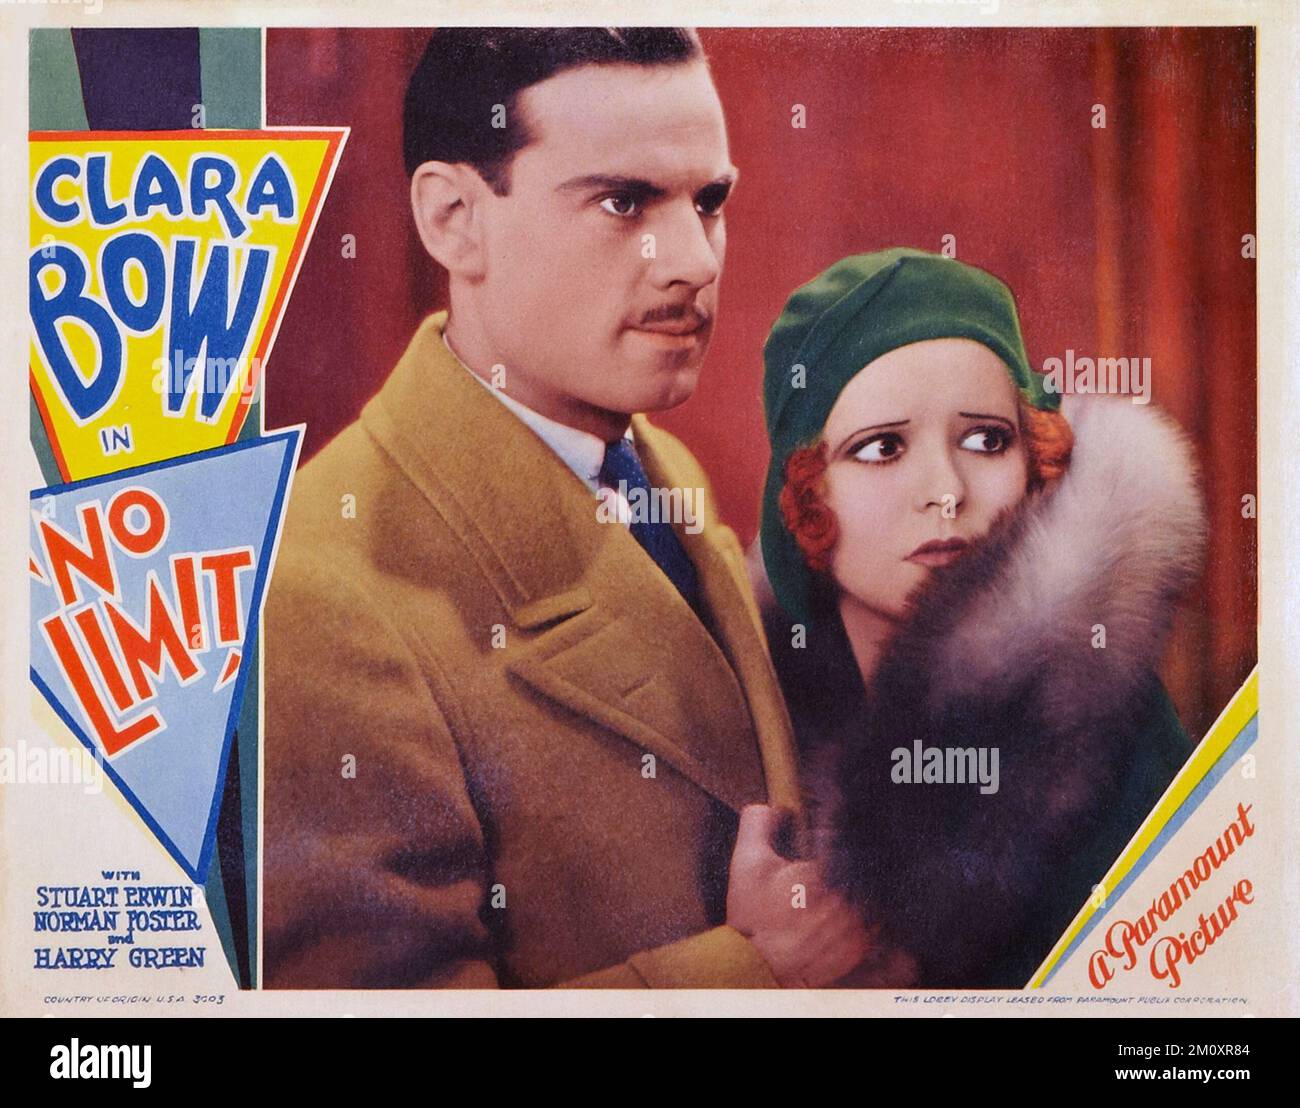 Norman Foster et Clara Bow In No Limit (1931) affiche de film Banque D'Images